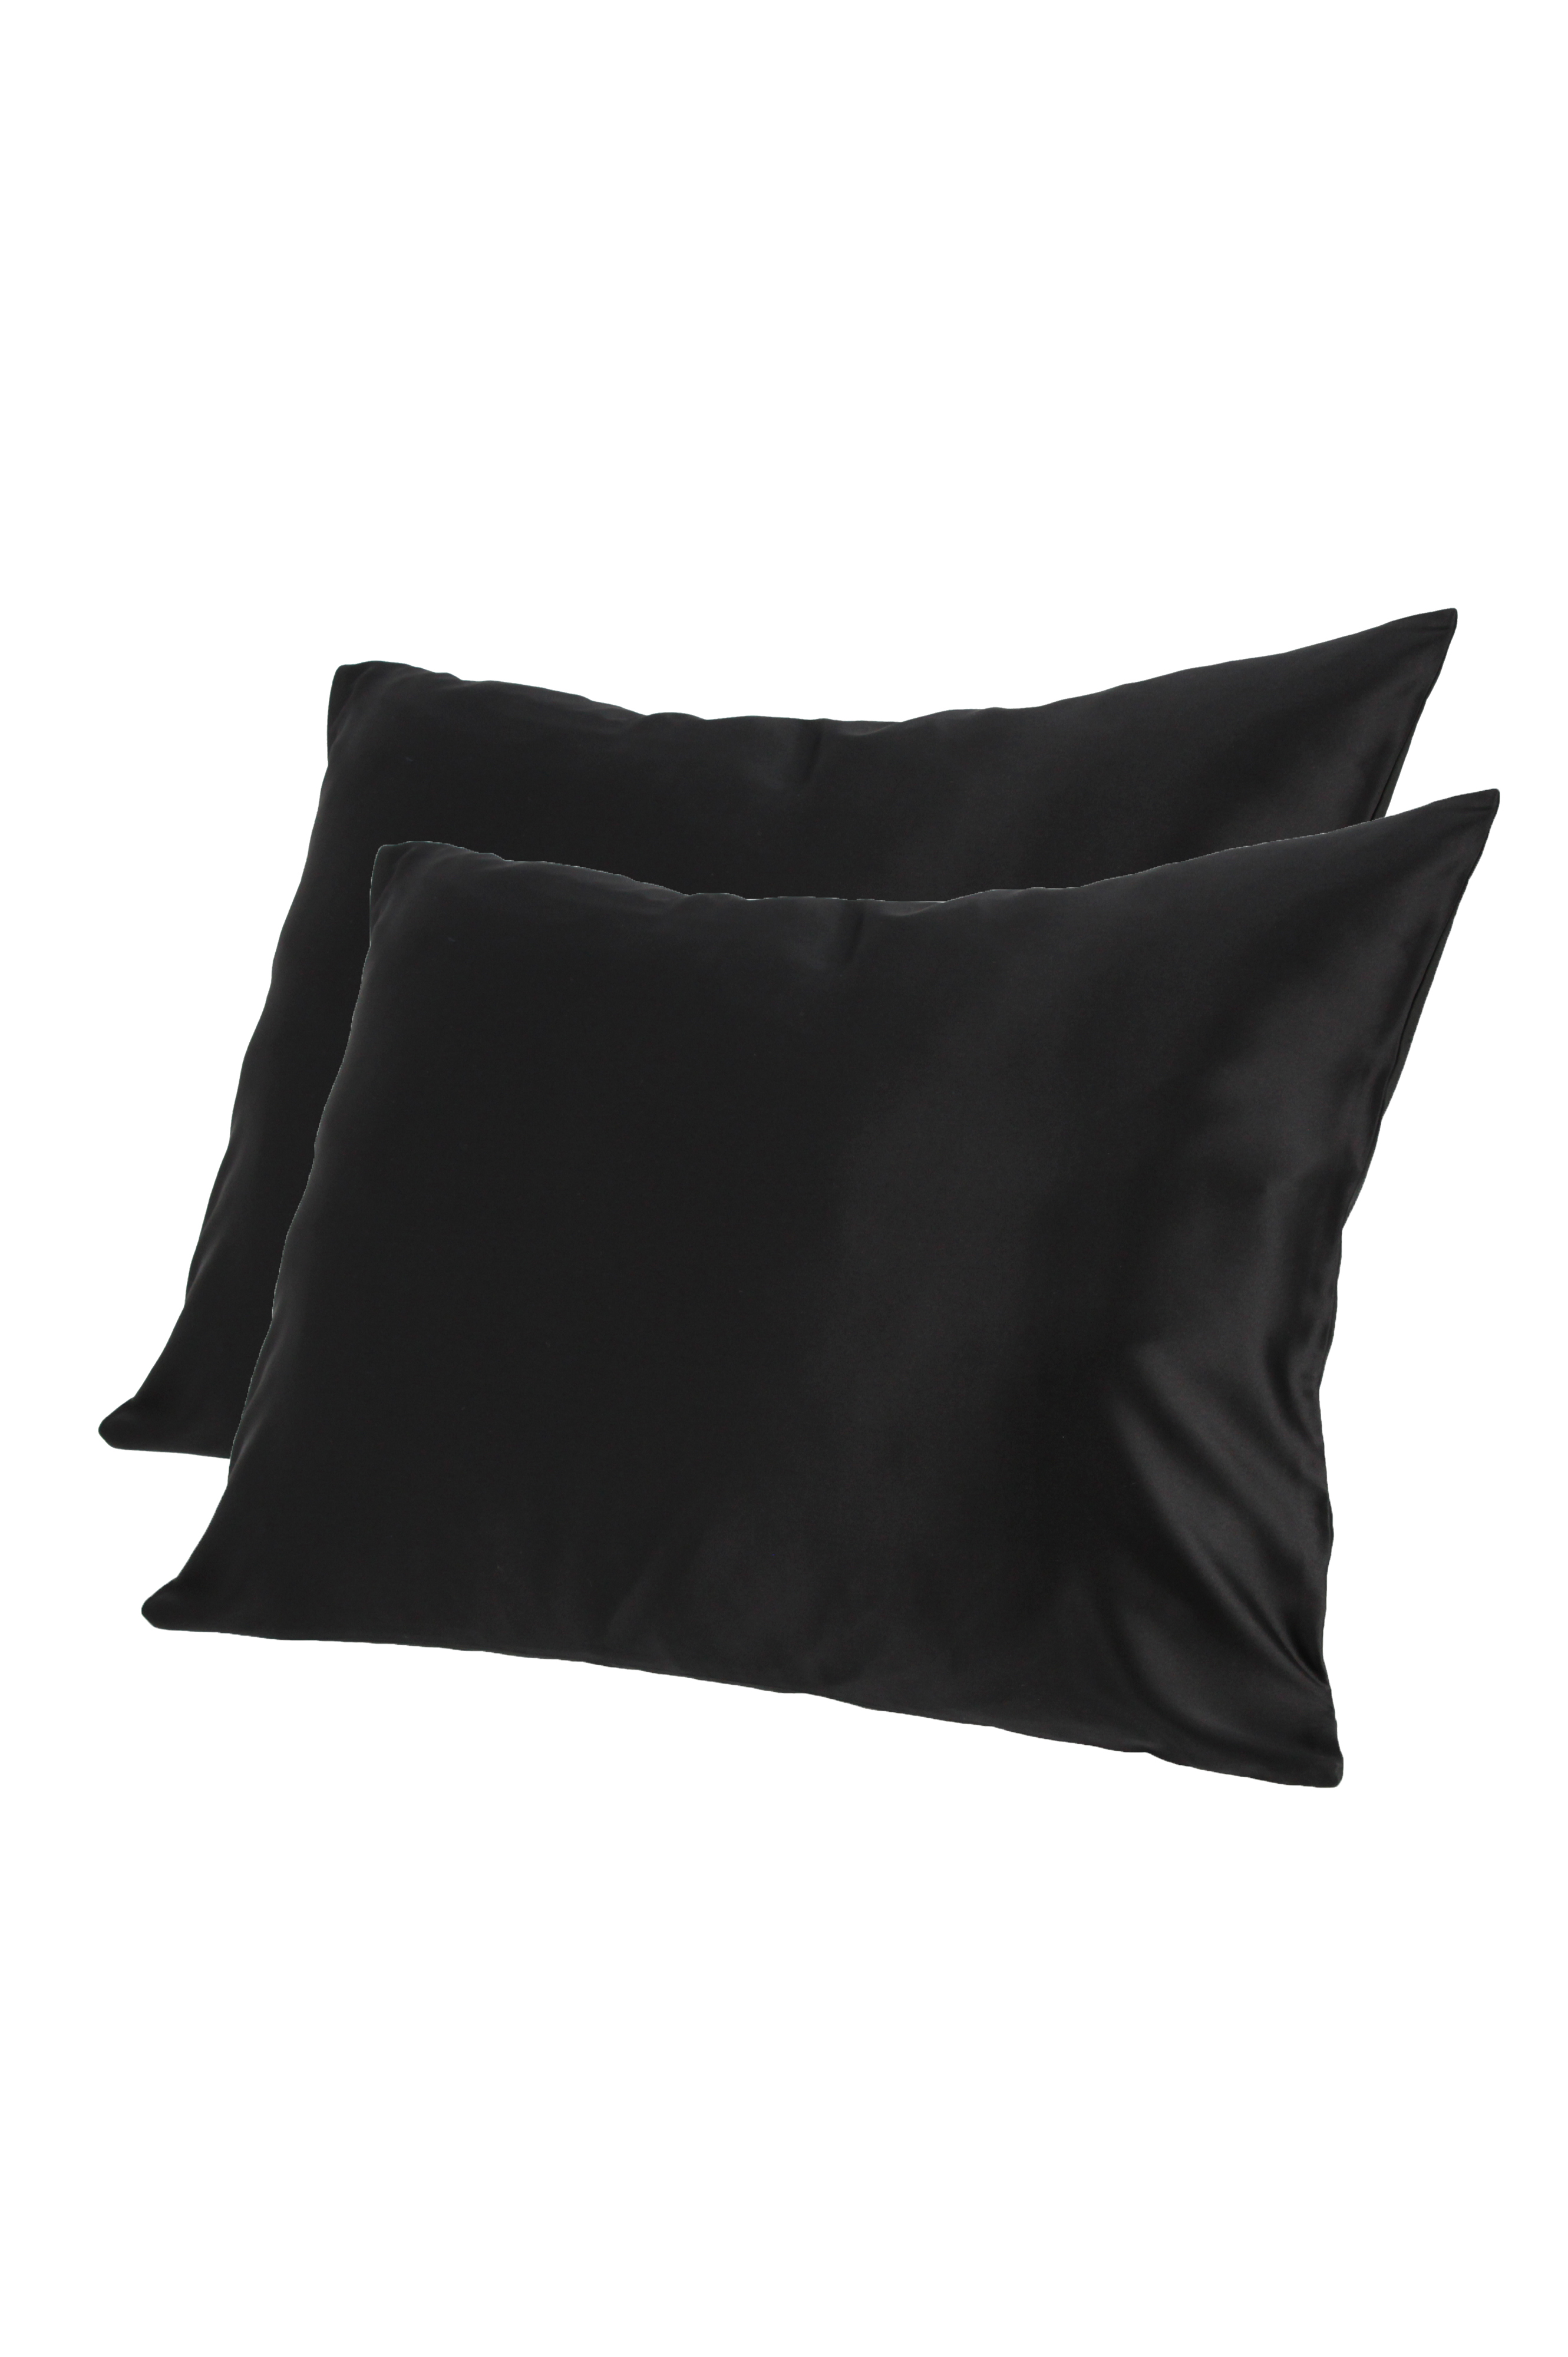 Black Silky Pillowcases Set - Top To Bottom Fashion